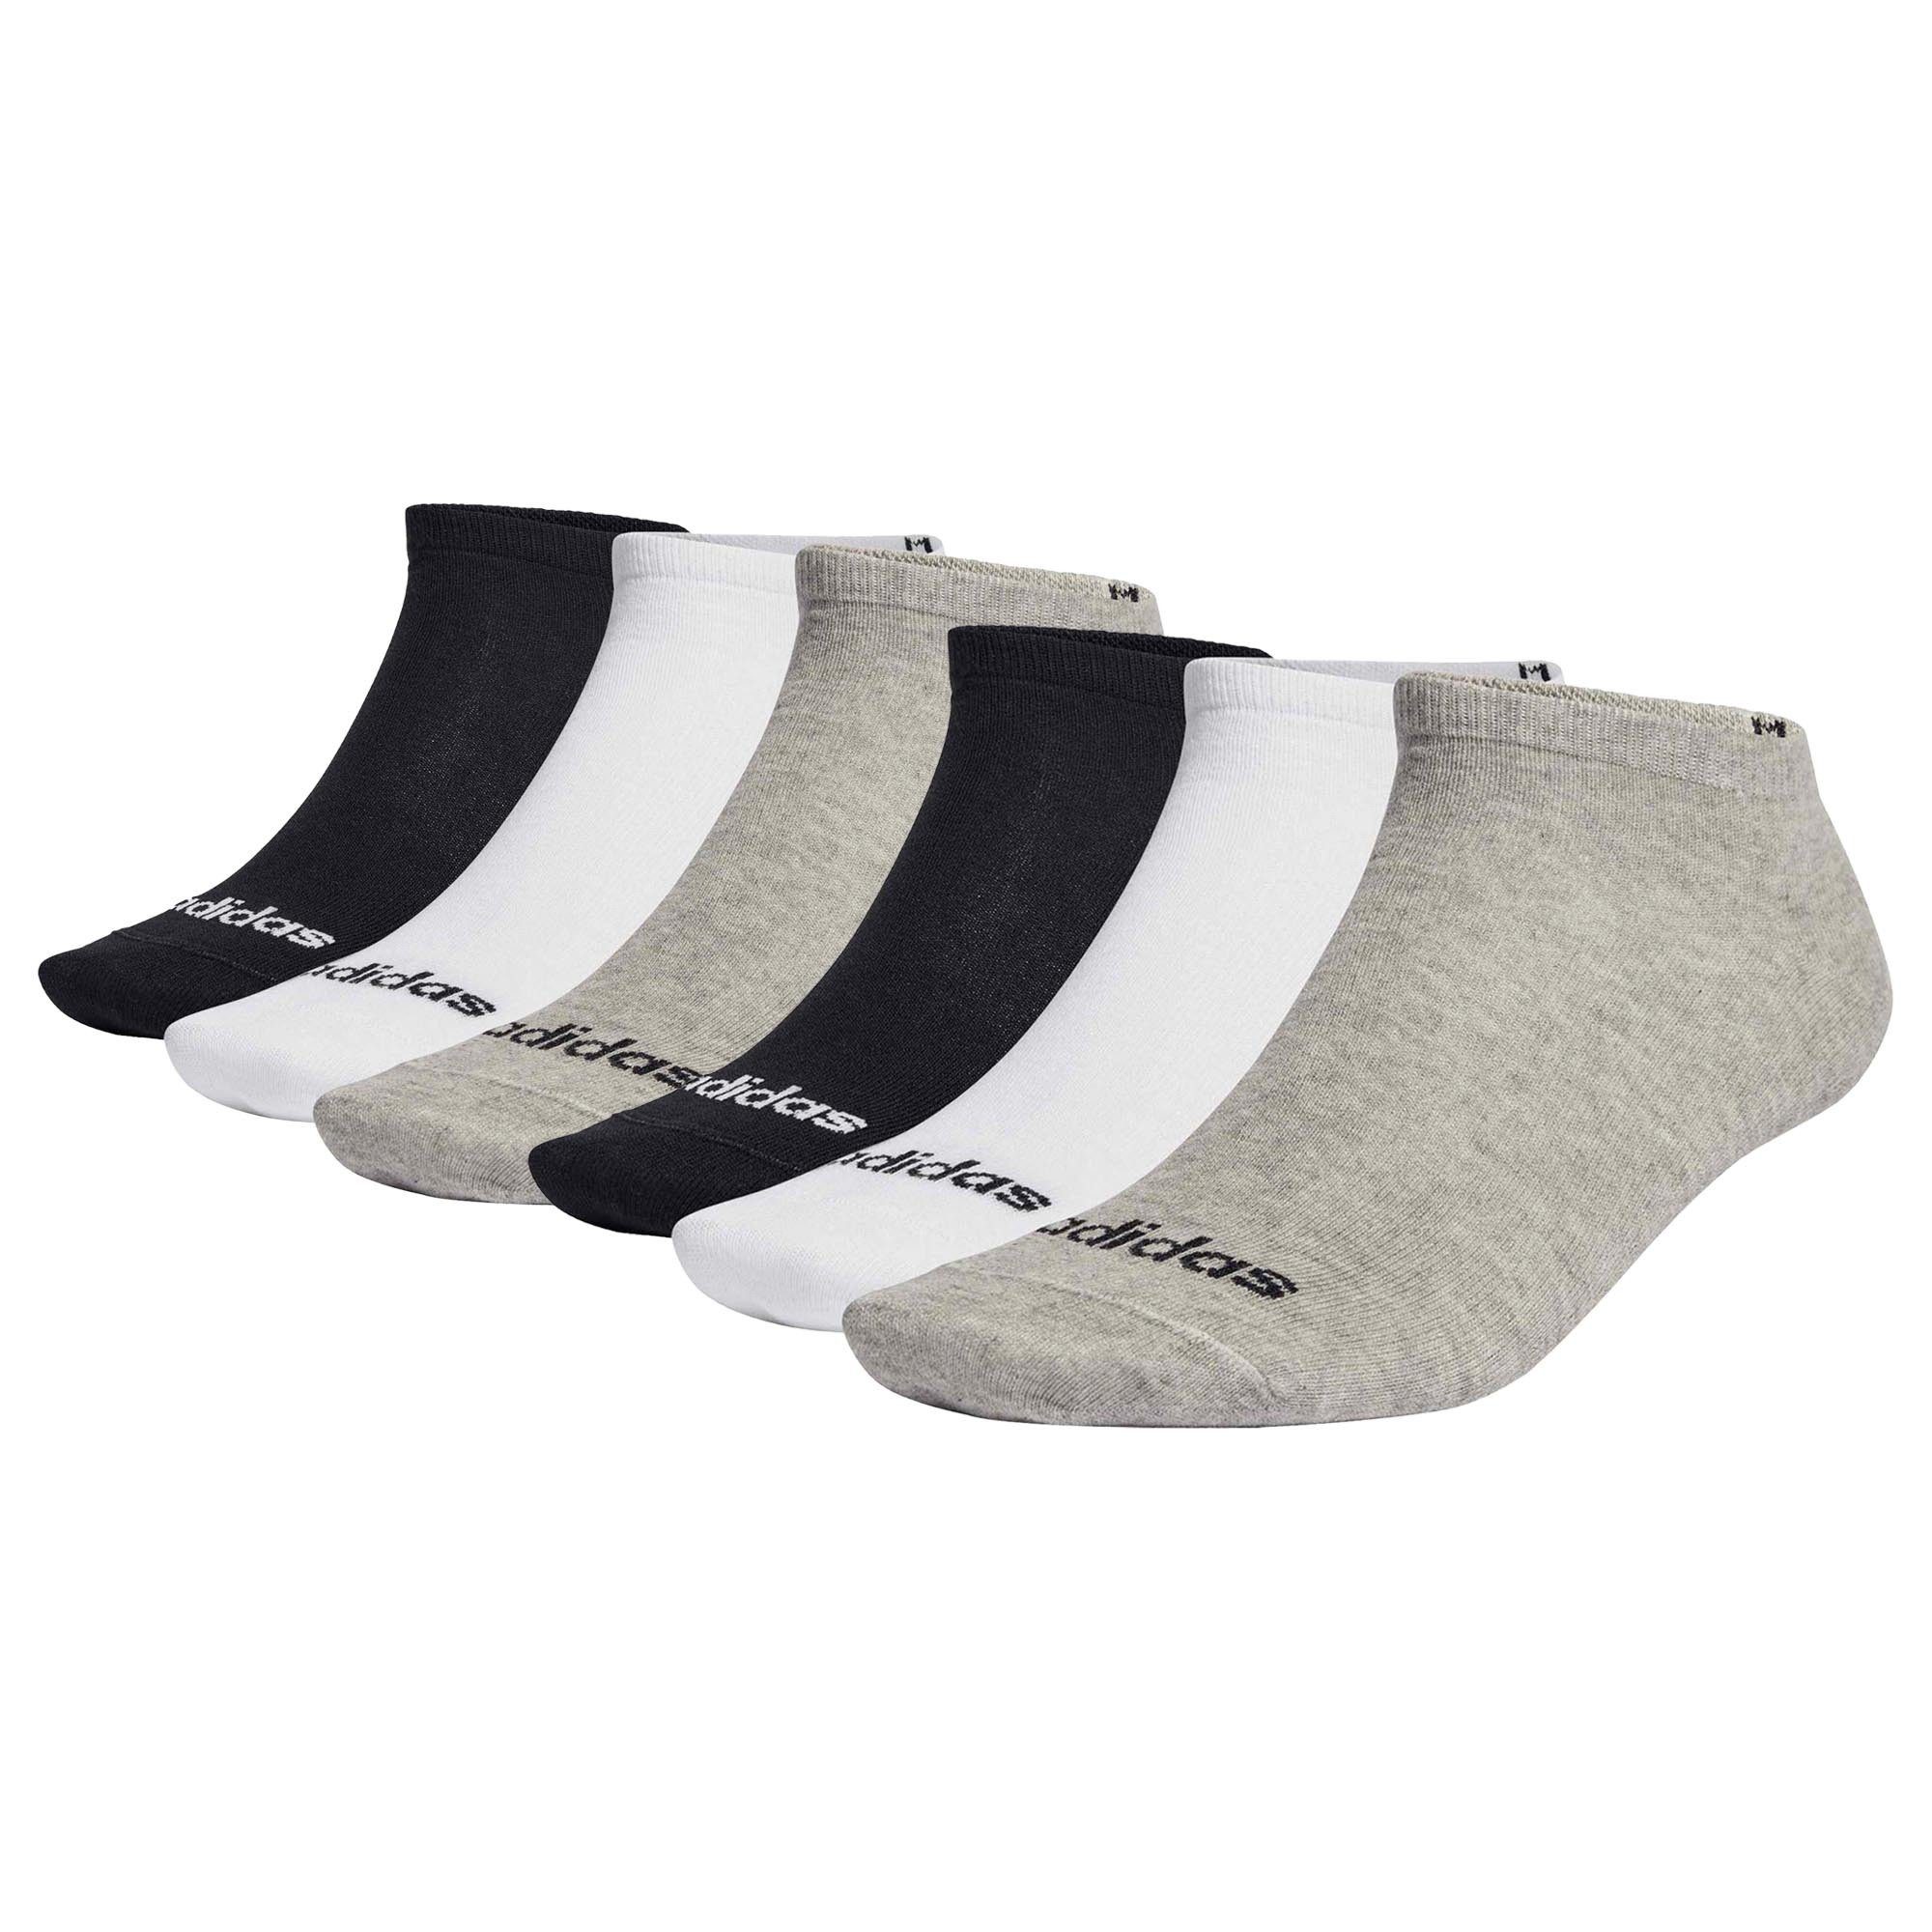 Sneakersocken Cushioned - Linear 6er Pack Crew adidas Unisex Socken, Schwarz/Grau/Weiß Sportswear